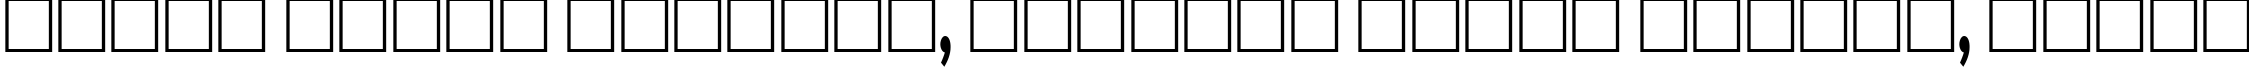 Пример написания шрифтом Aardvark60n текста на белорусском